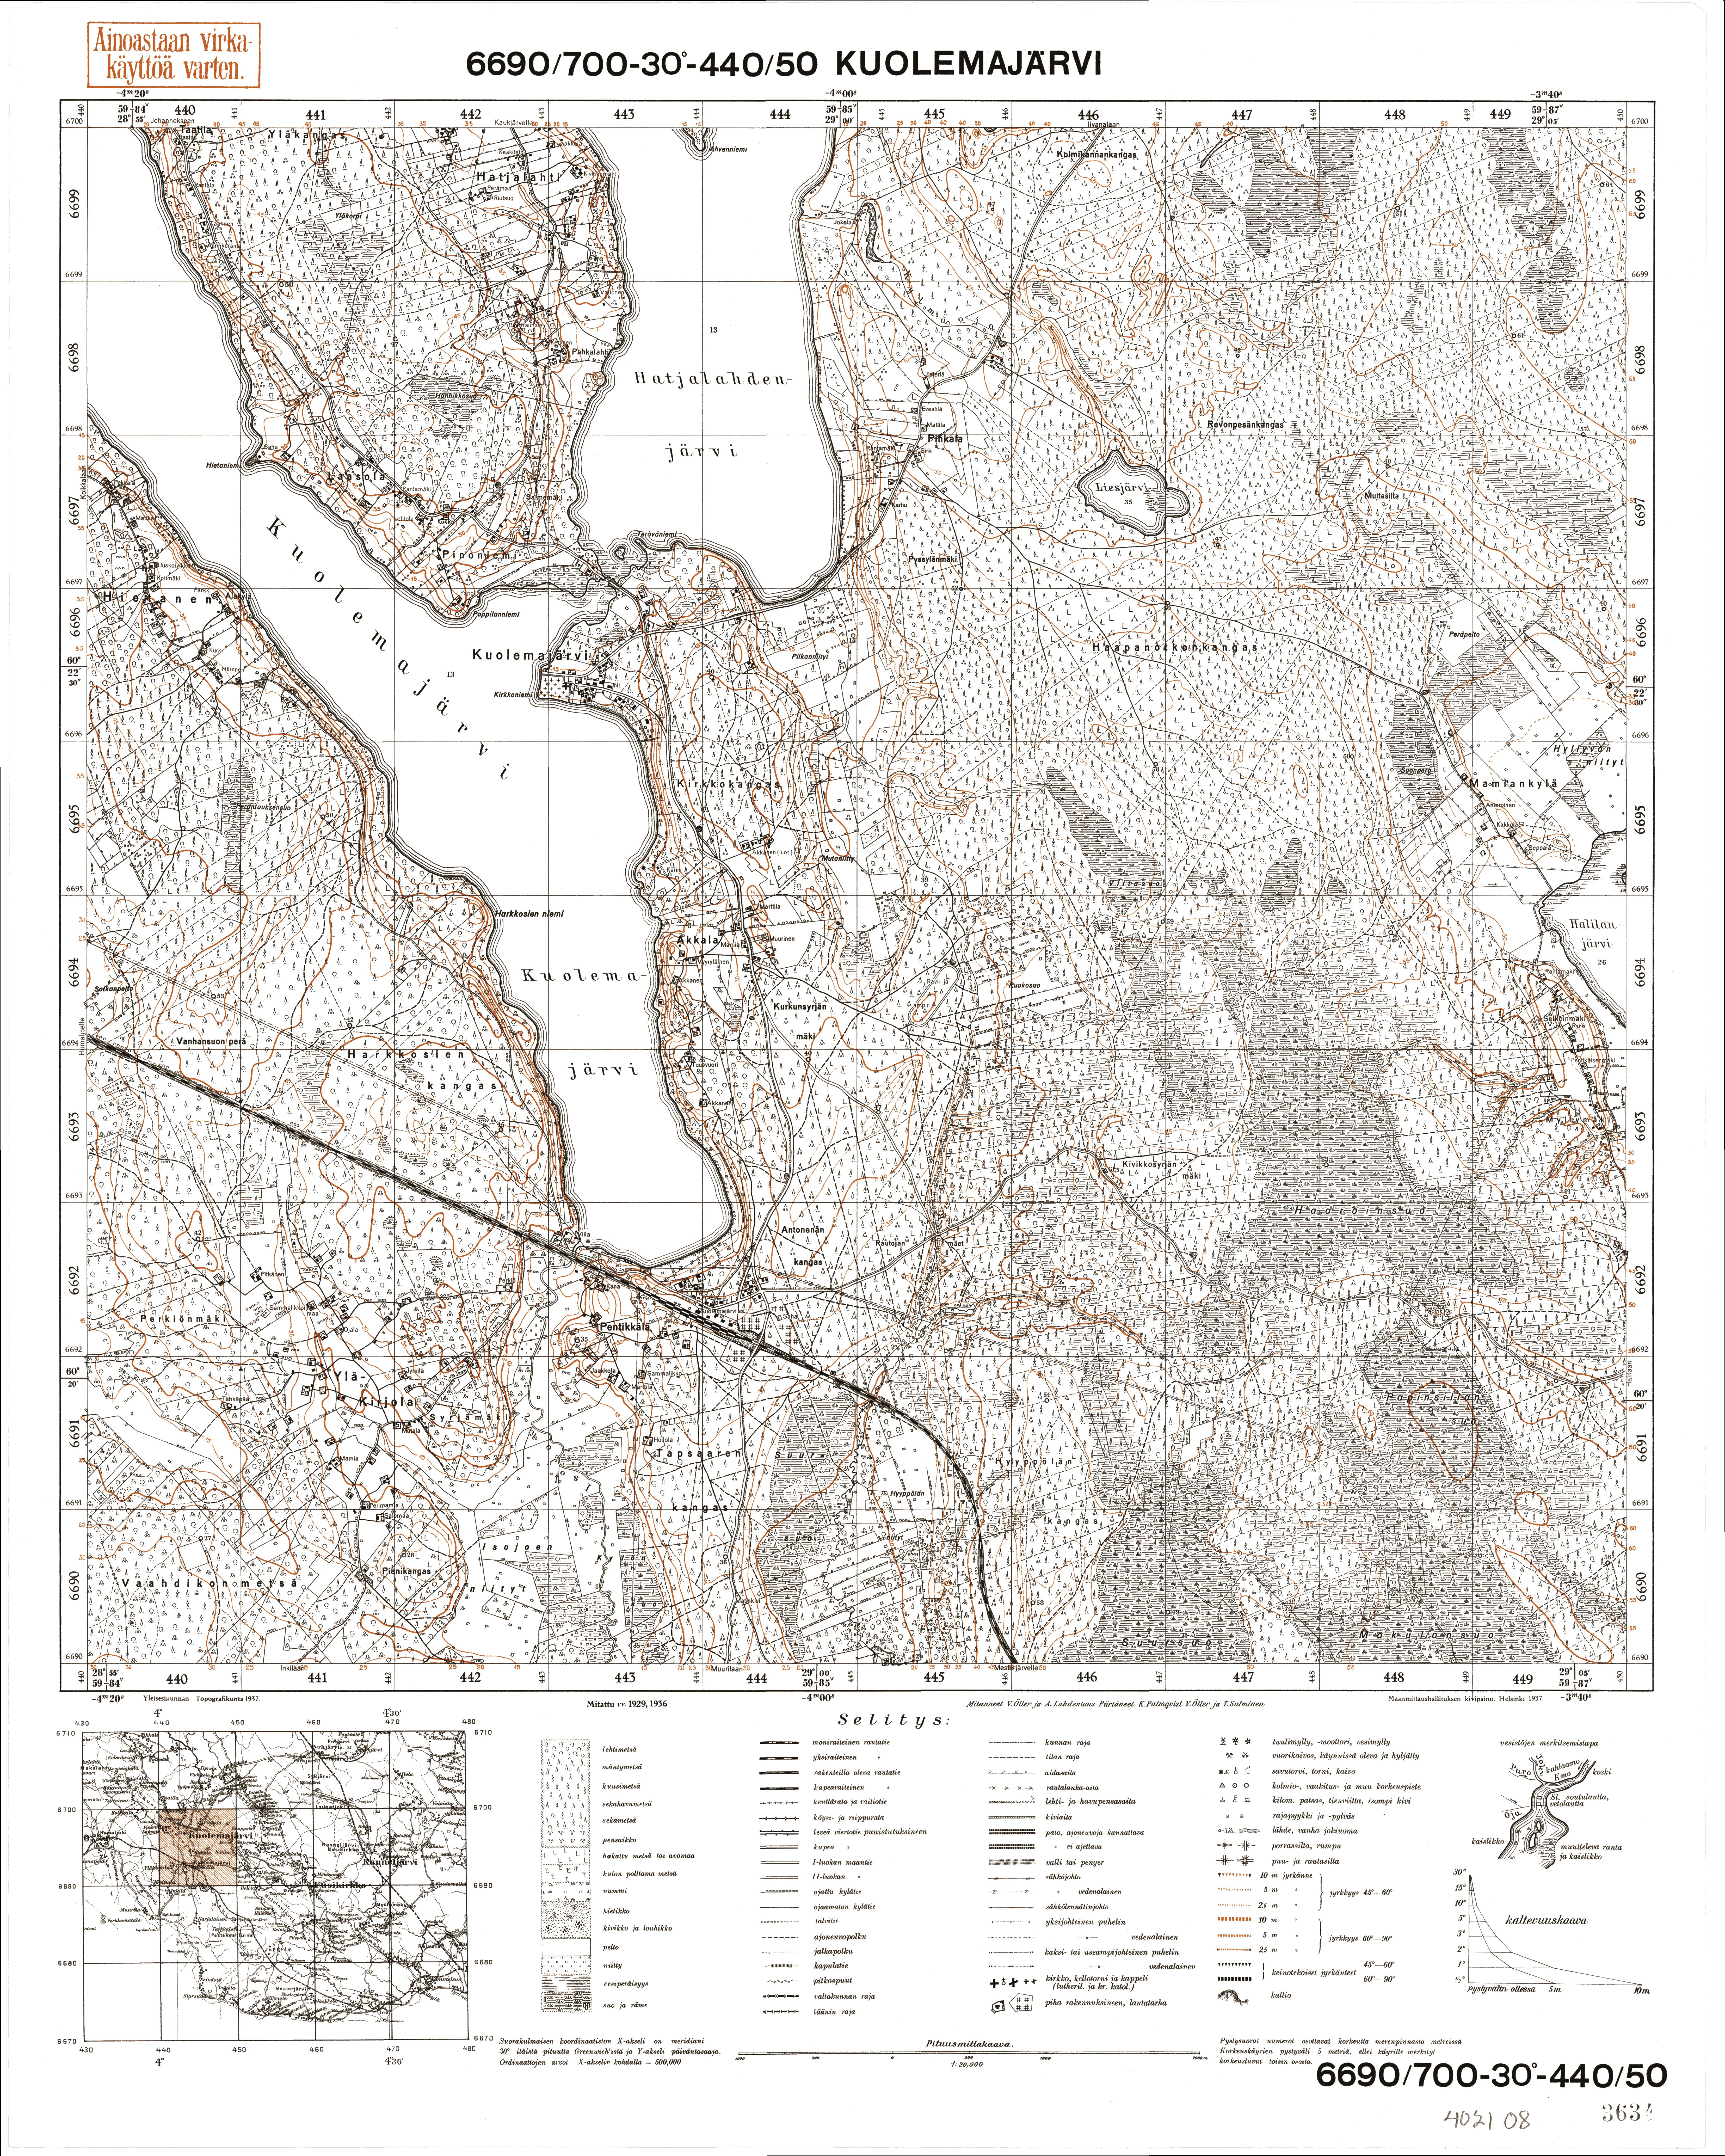 Pionerskoje. Kuolemajärvi. Topografikartta 402108. Topographic map from 1940